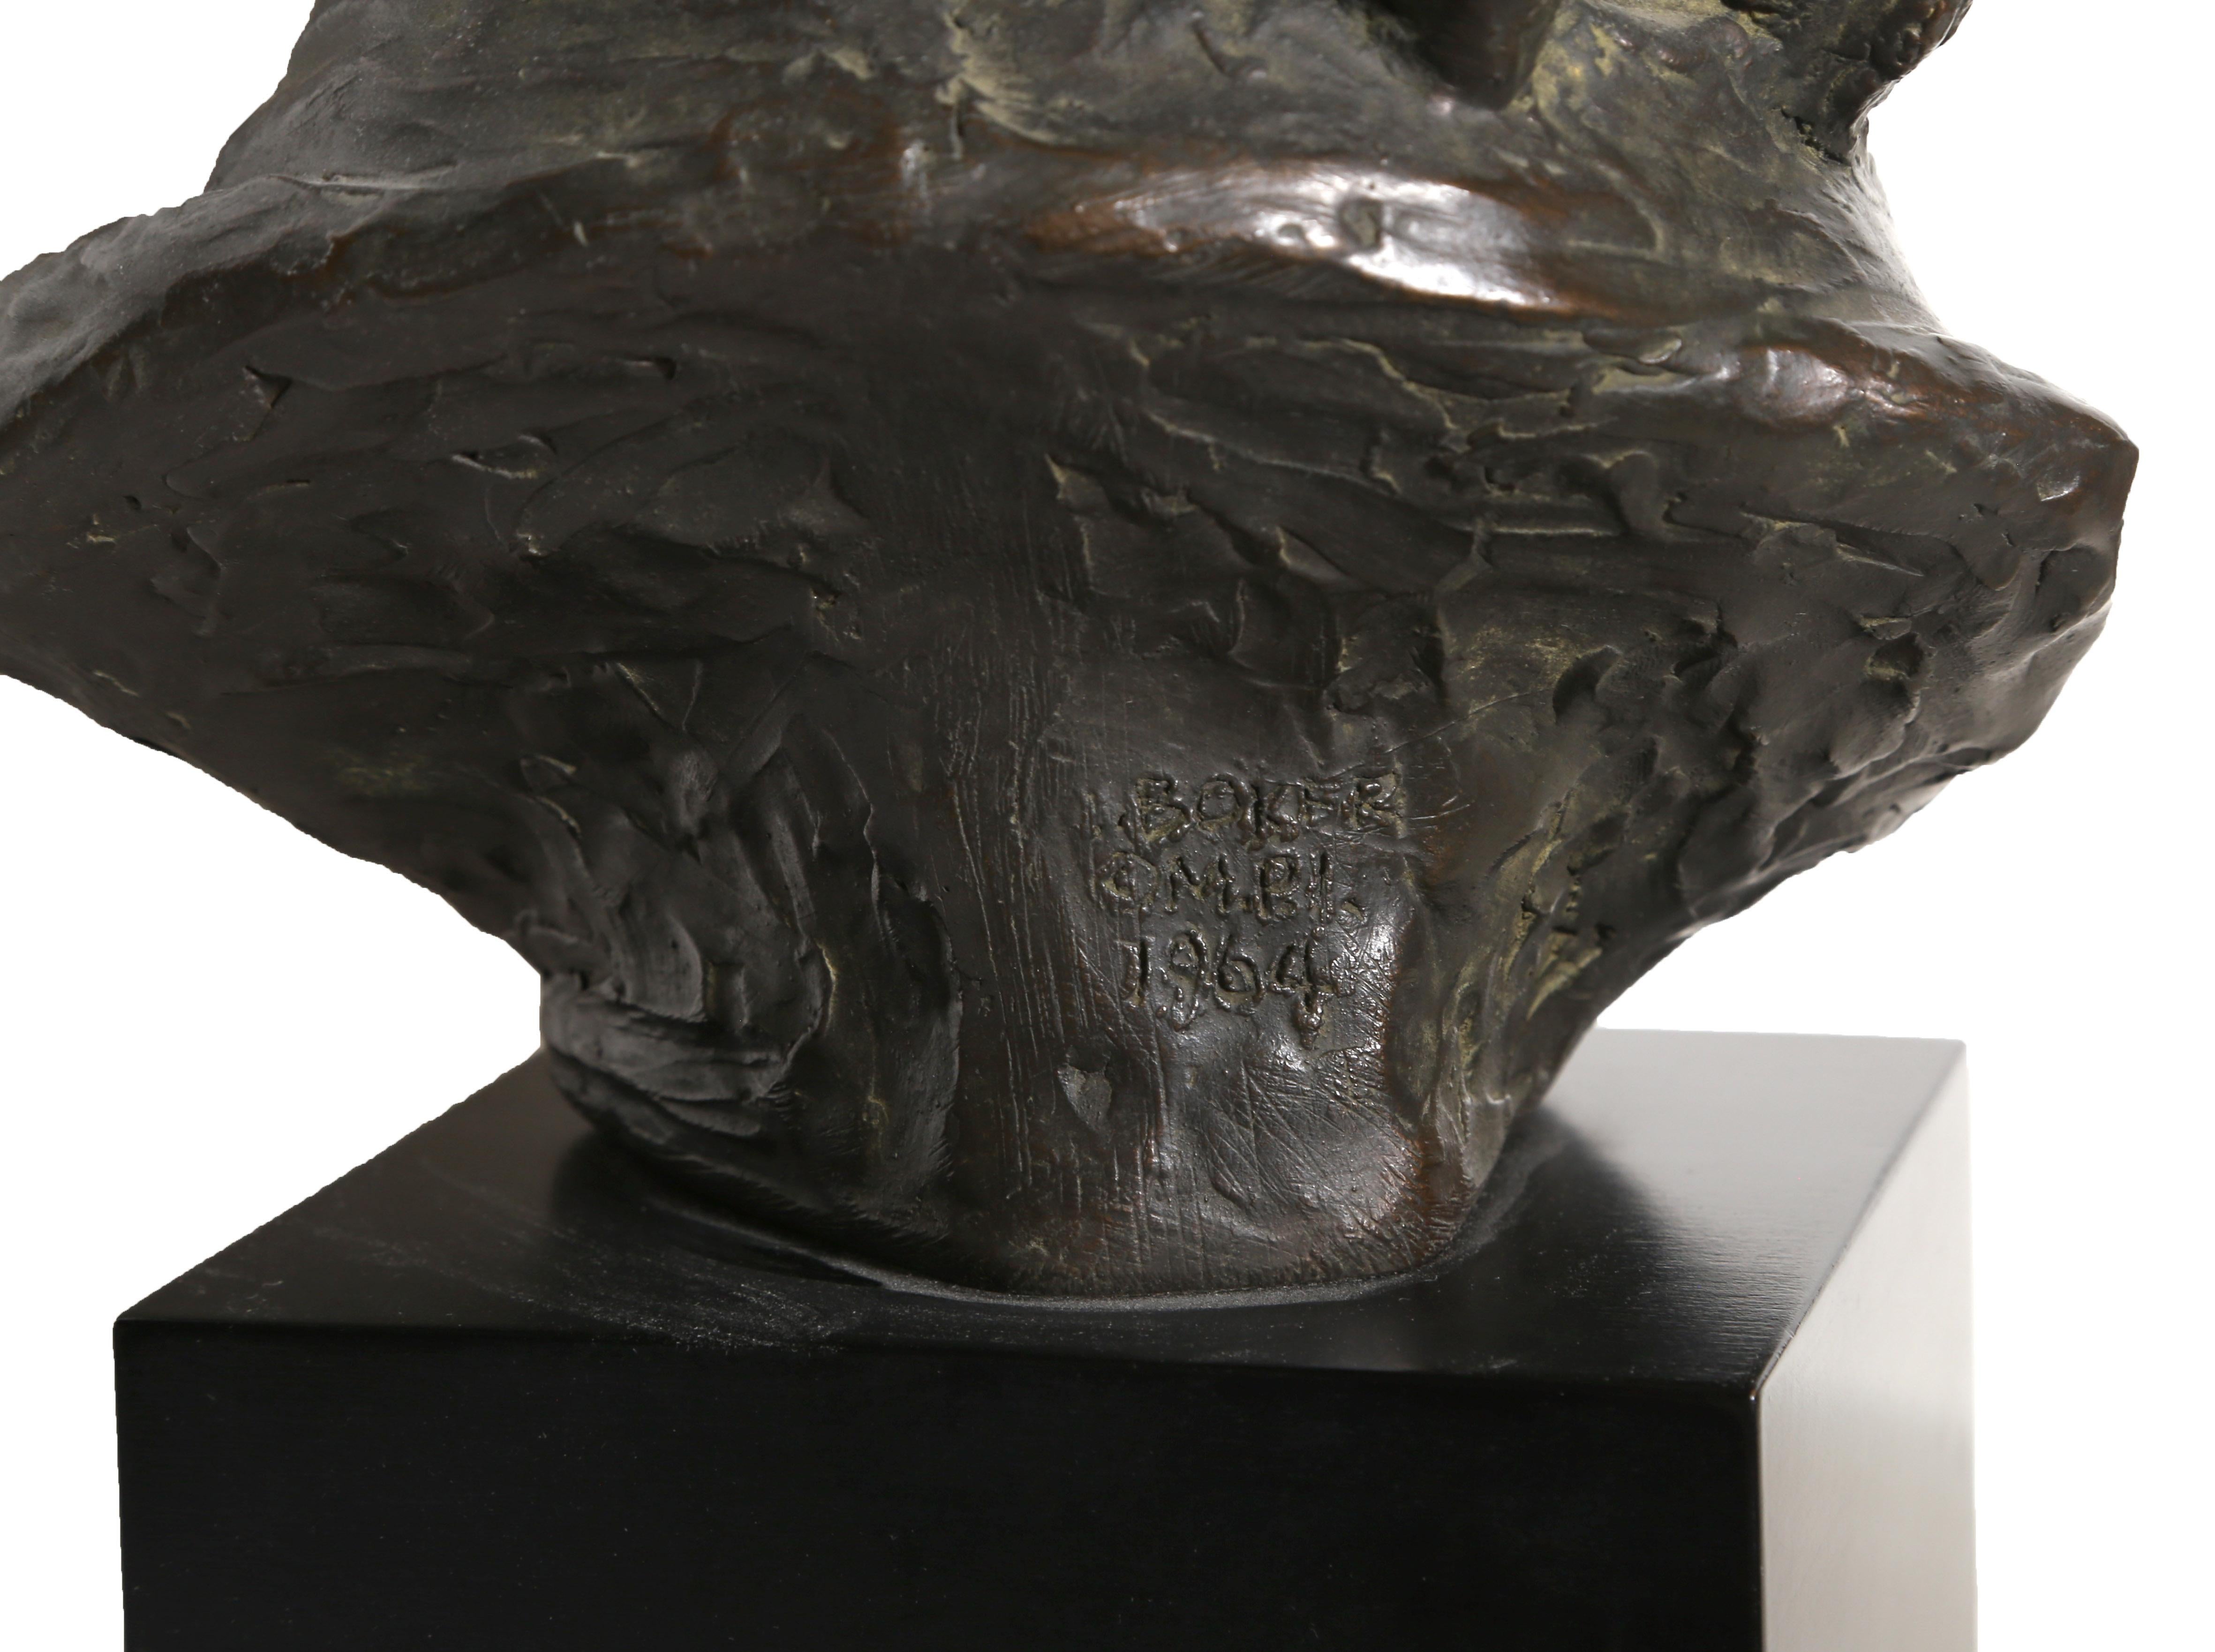 epstein bust of einstein